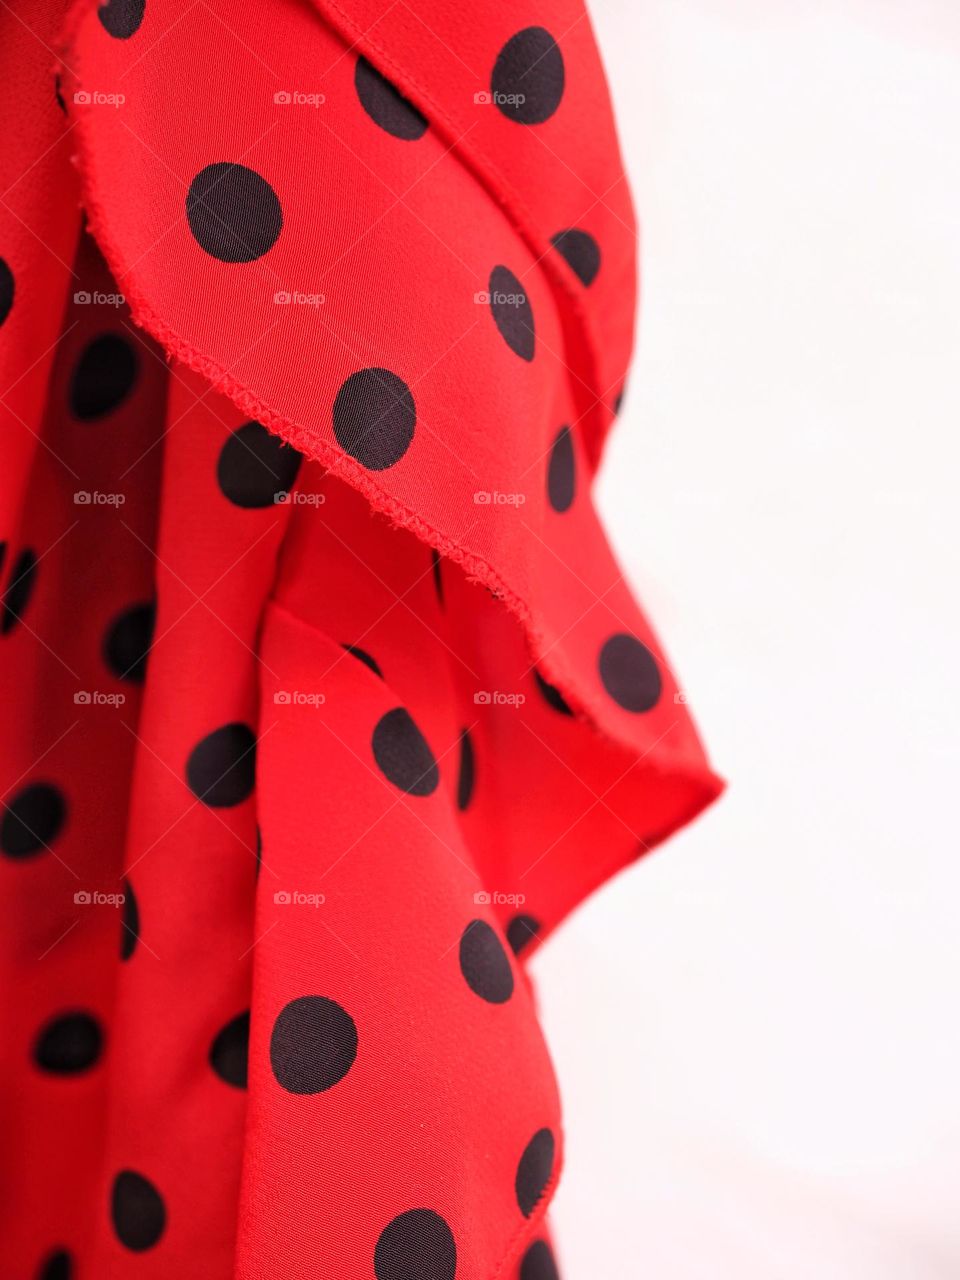 Red flamenco dress close-up